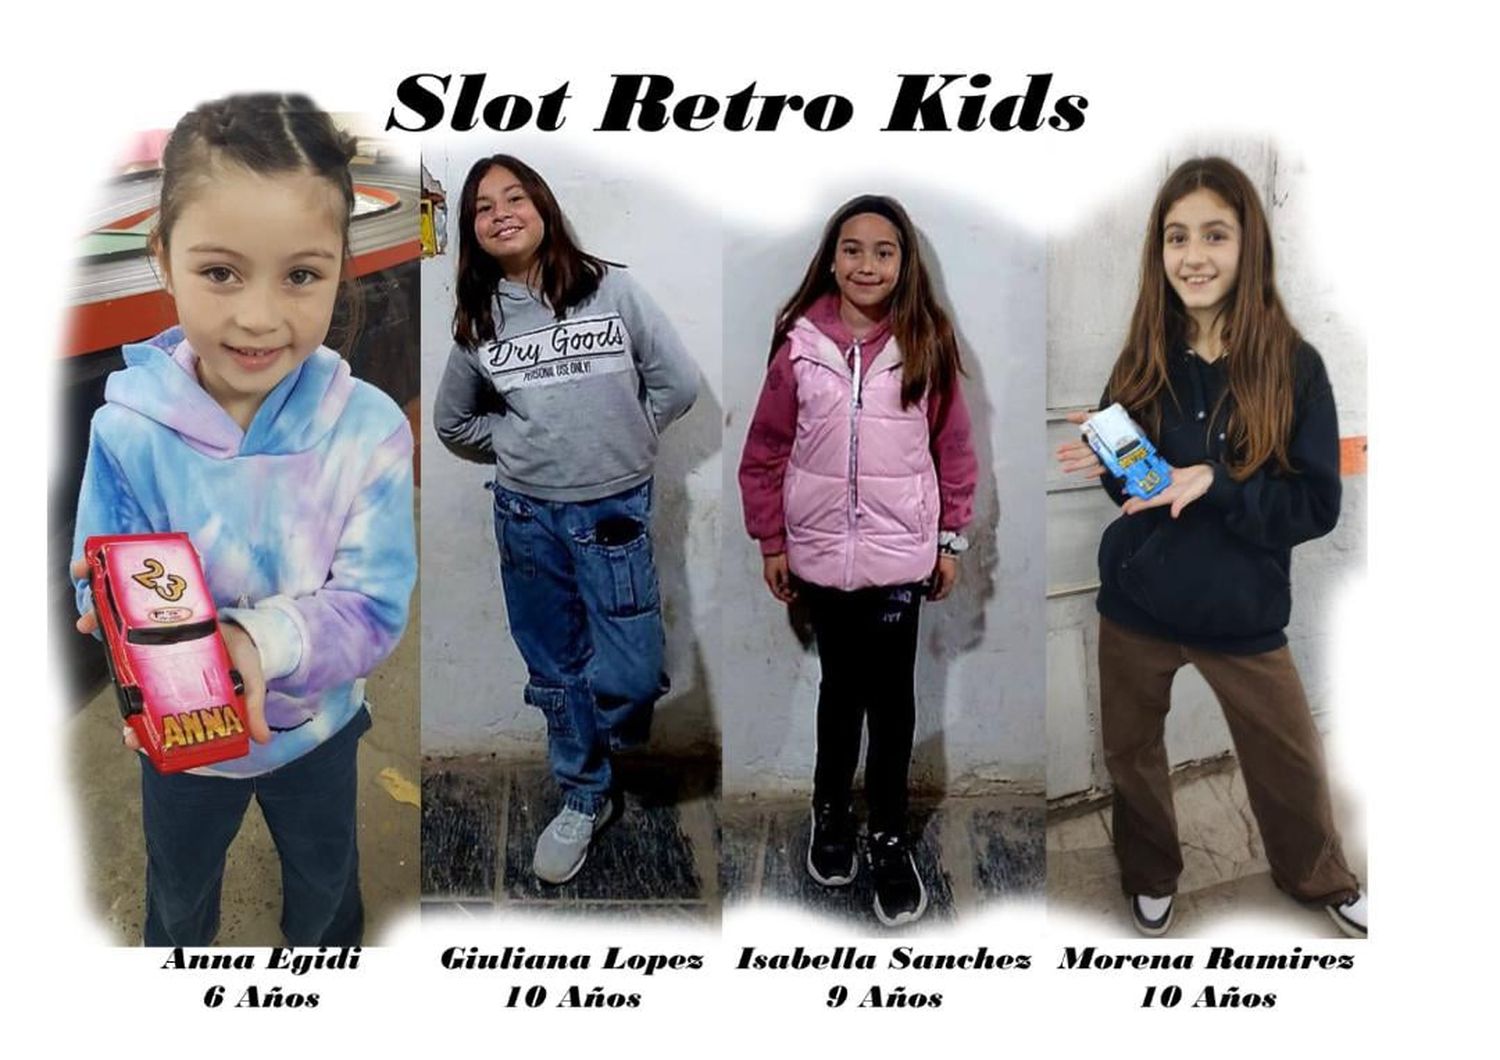 Las Slot Retro Kids, Anna Egidi, Giuliana López, Isabella Sánchez y Morena Ramírez